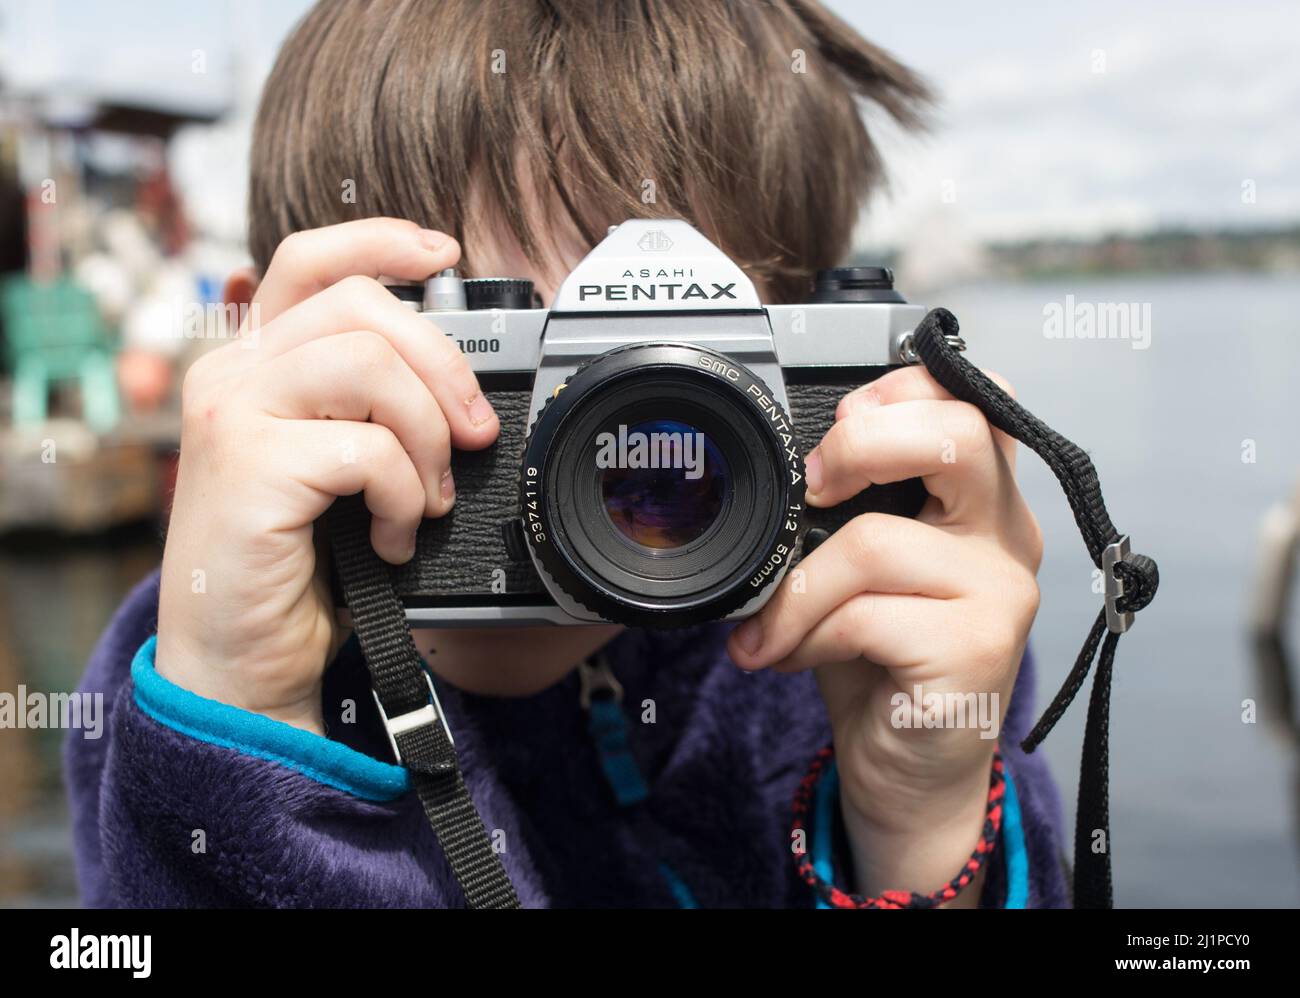 Ein kleiner Junge versucht zu lernen und mit der Filmkamera zu fotografieren. Junge mit Filmkamera Fotografie lernen. Pentax Filmkamera und ein Kind. Talentiertes Kind. Stockfoto